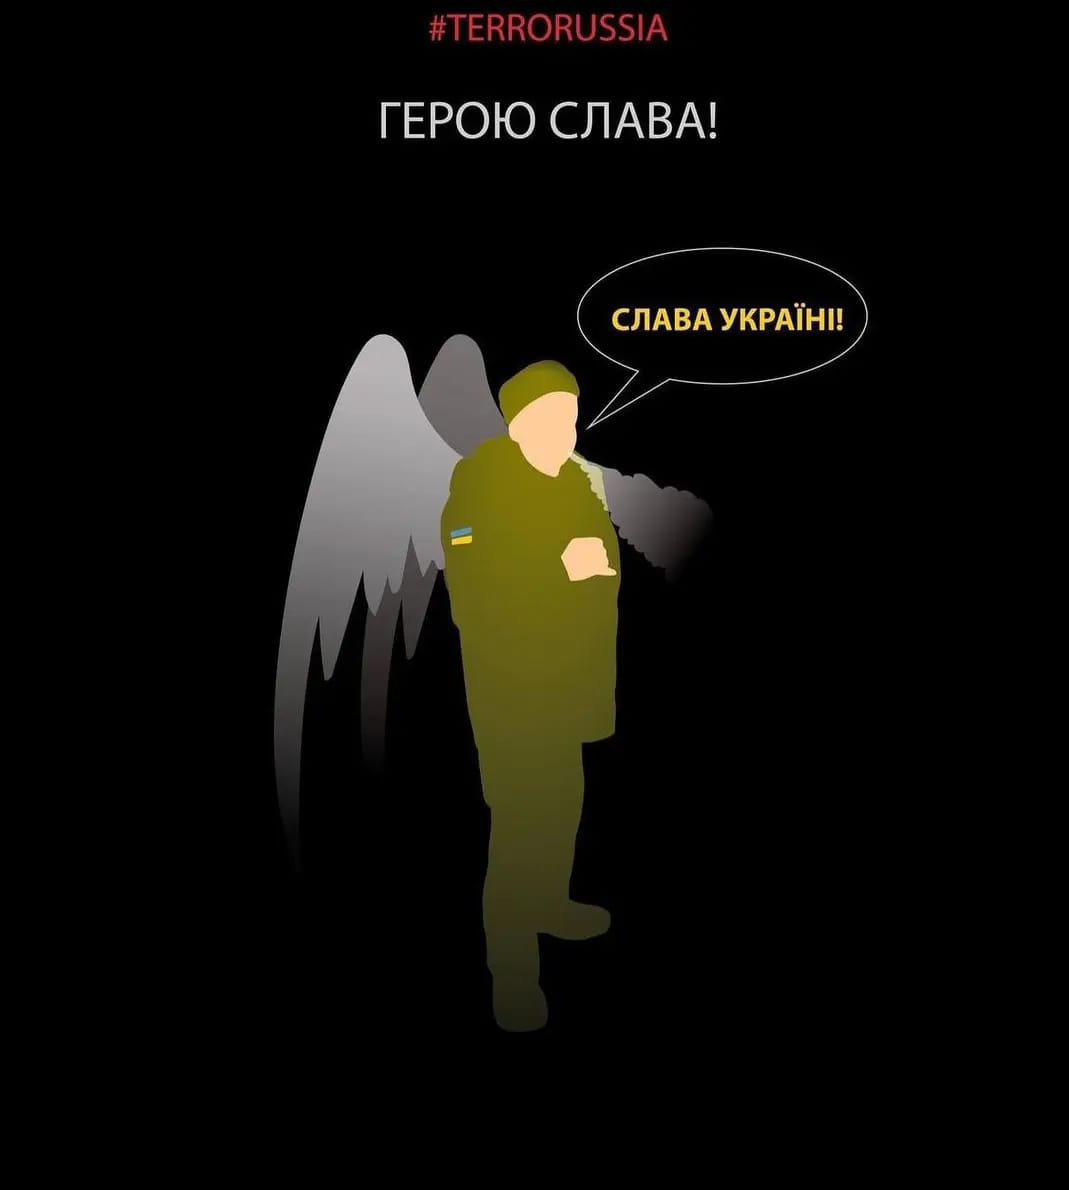 Герою слава! В честь украинского бесстрашного мученика-воина запустили масштабный флешмоб